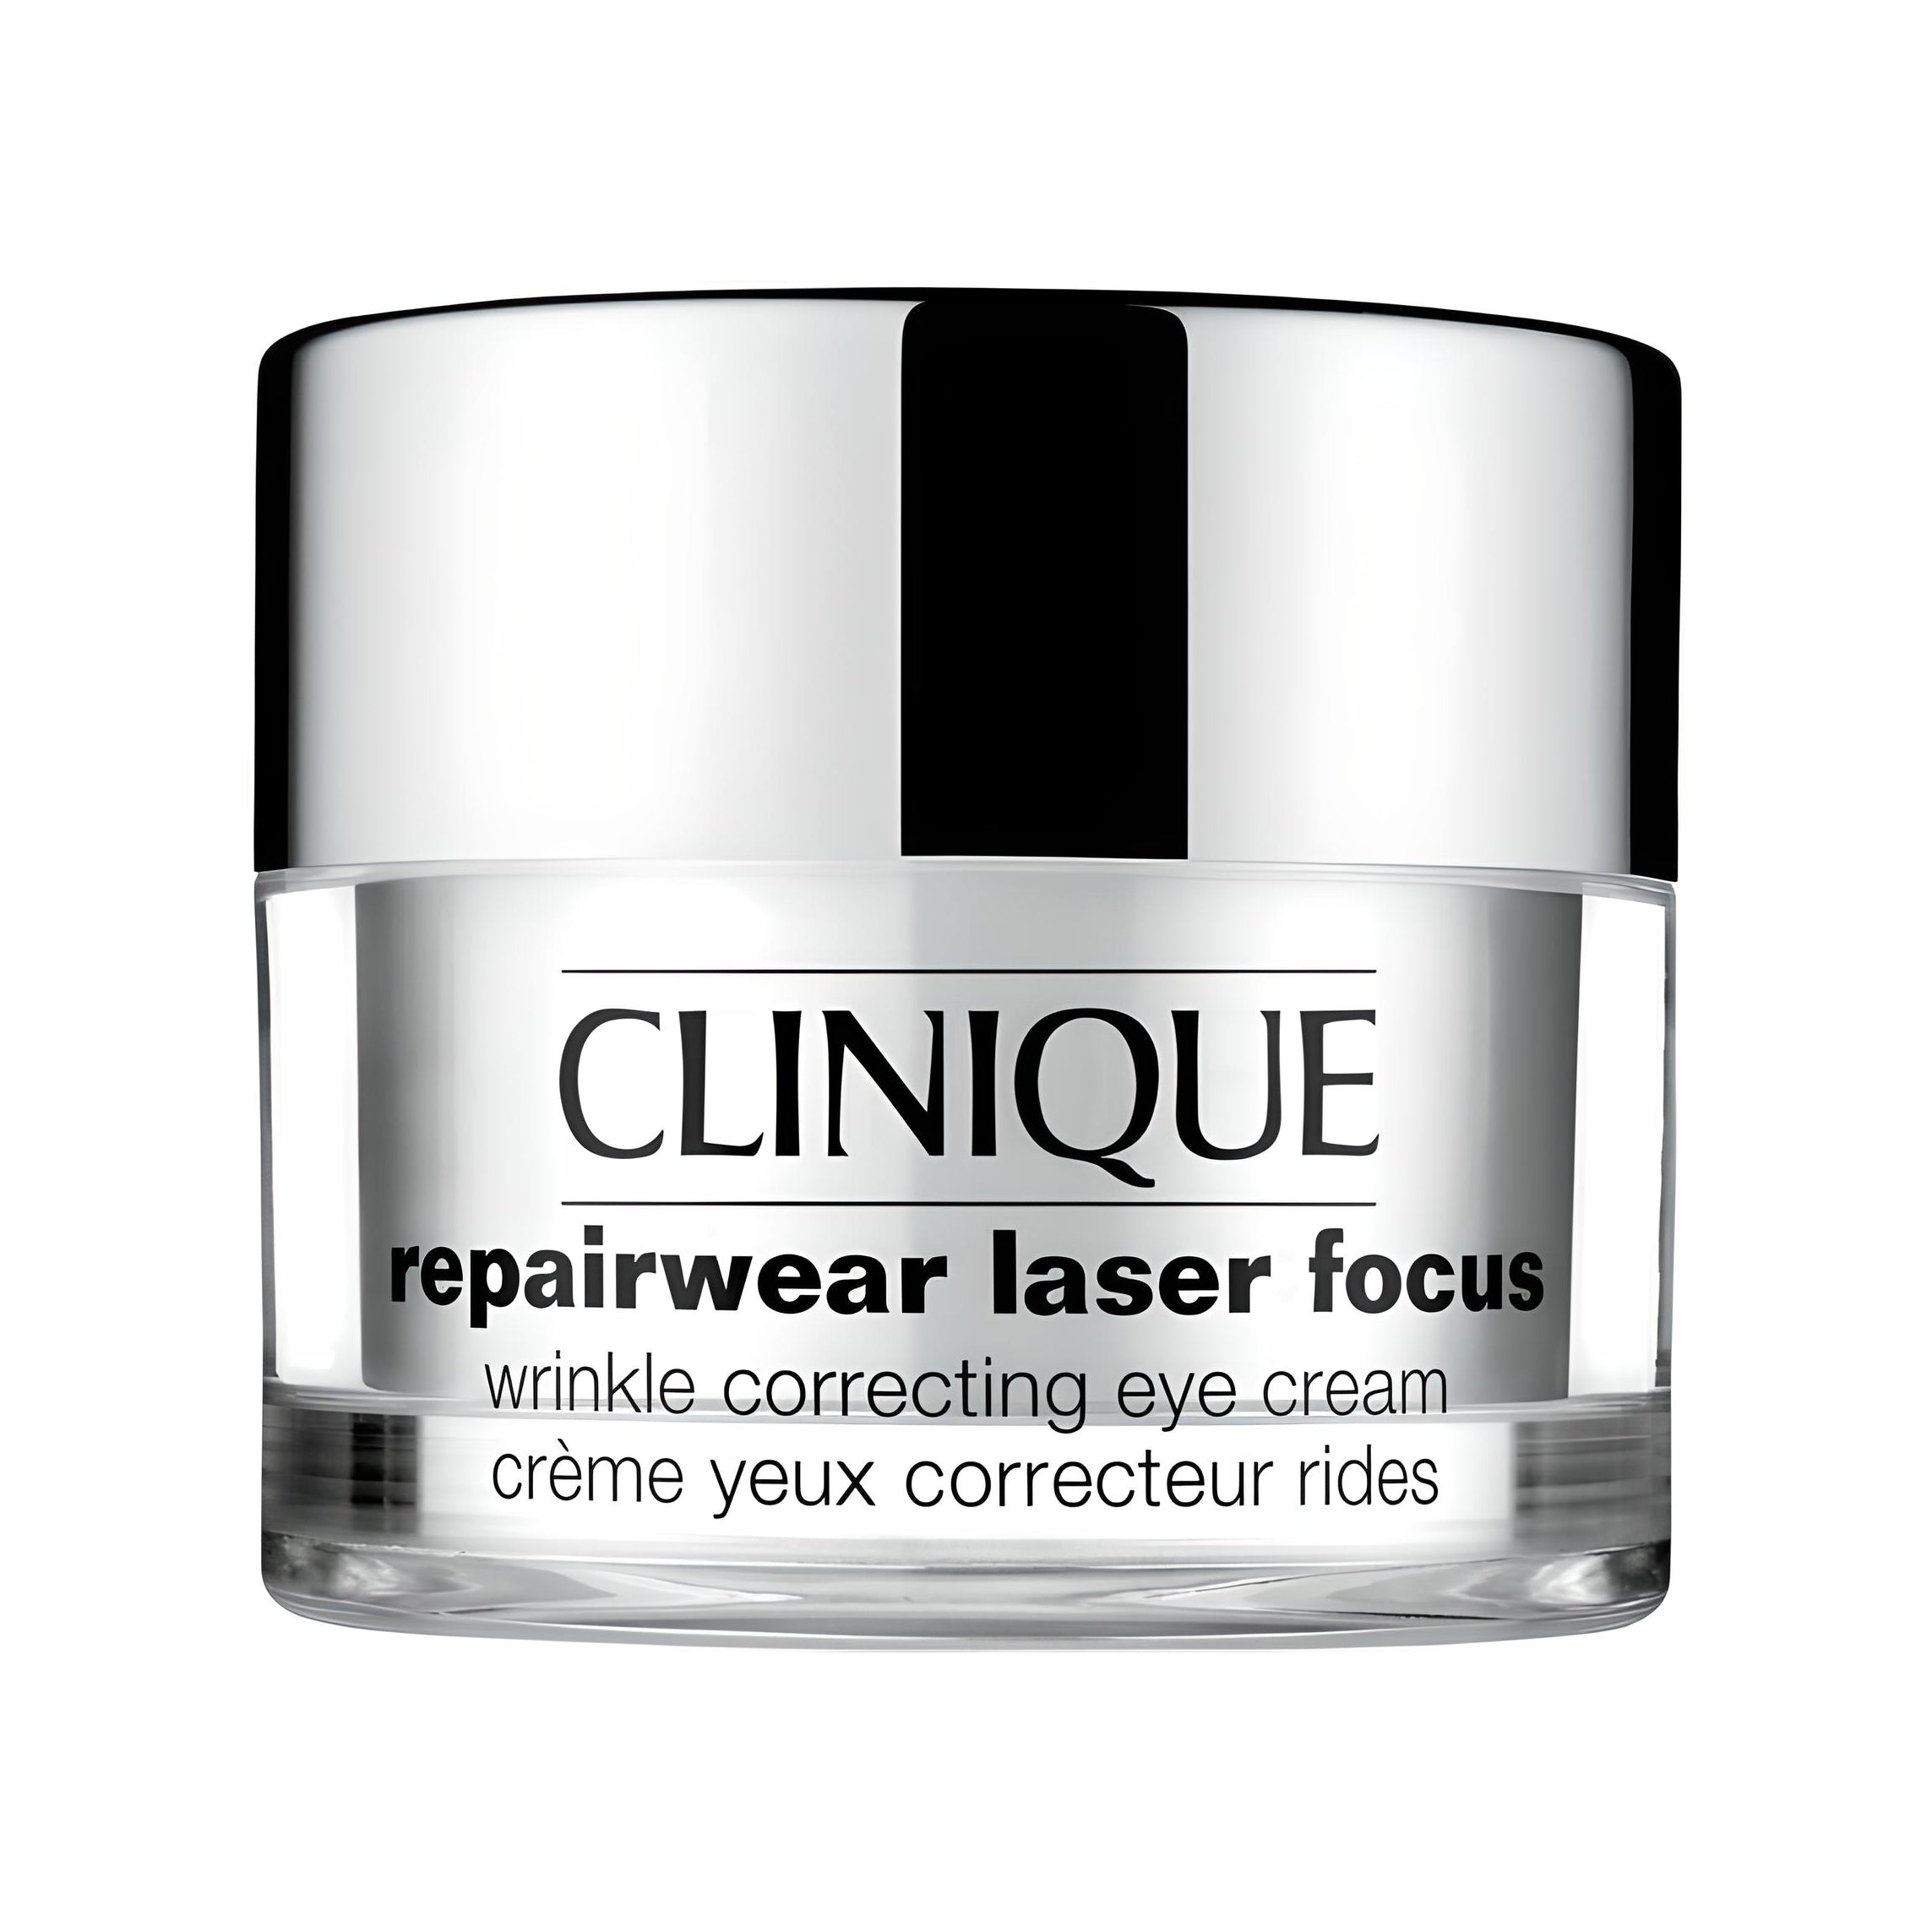 REPAIRWEAR LASER FOCUS wrinkle correcting eye cream Gesichtspflege CLINIQUE   